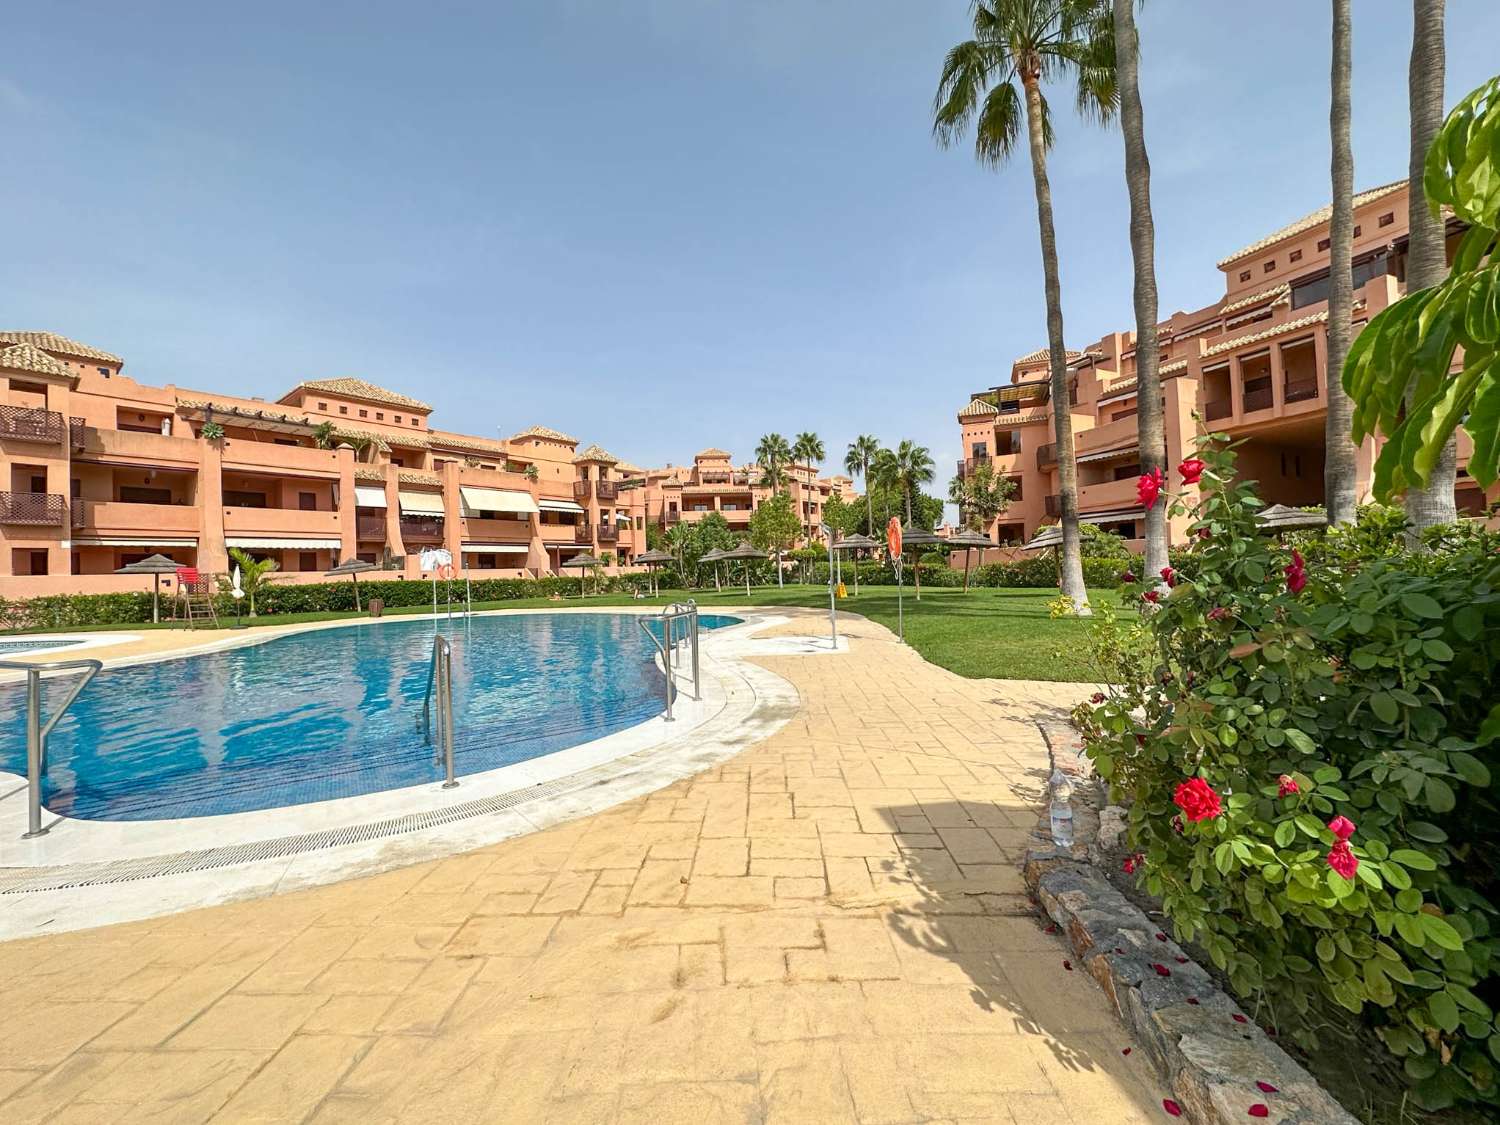 Våning hyra semesterbostad i Playa Granada (Motril)